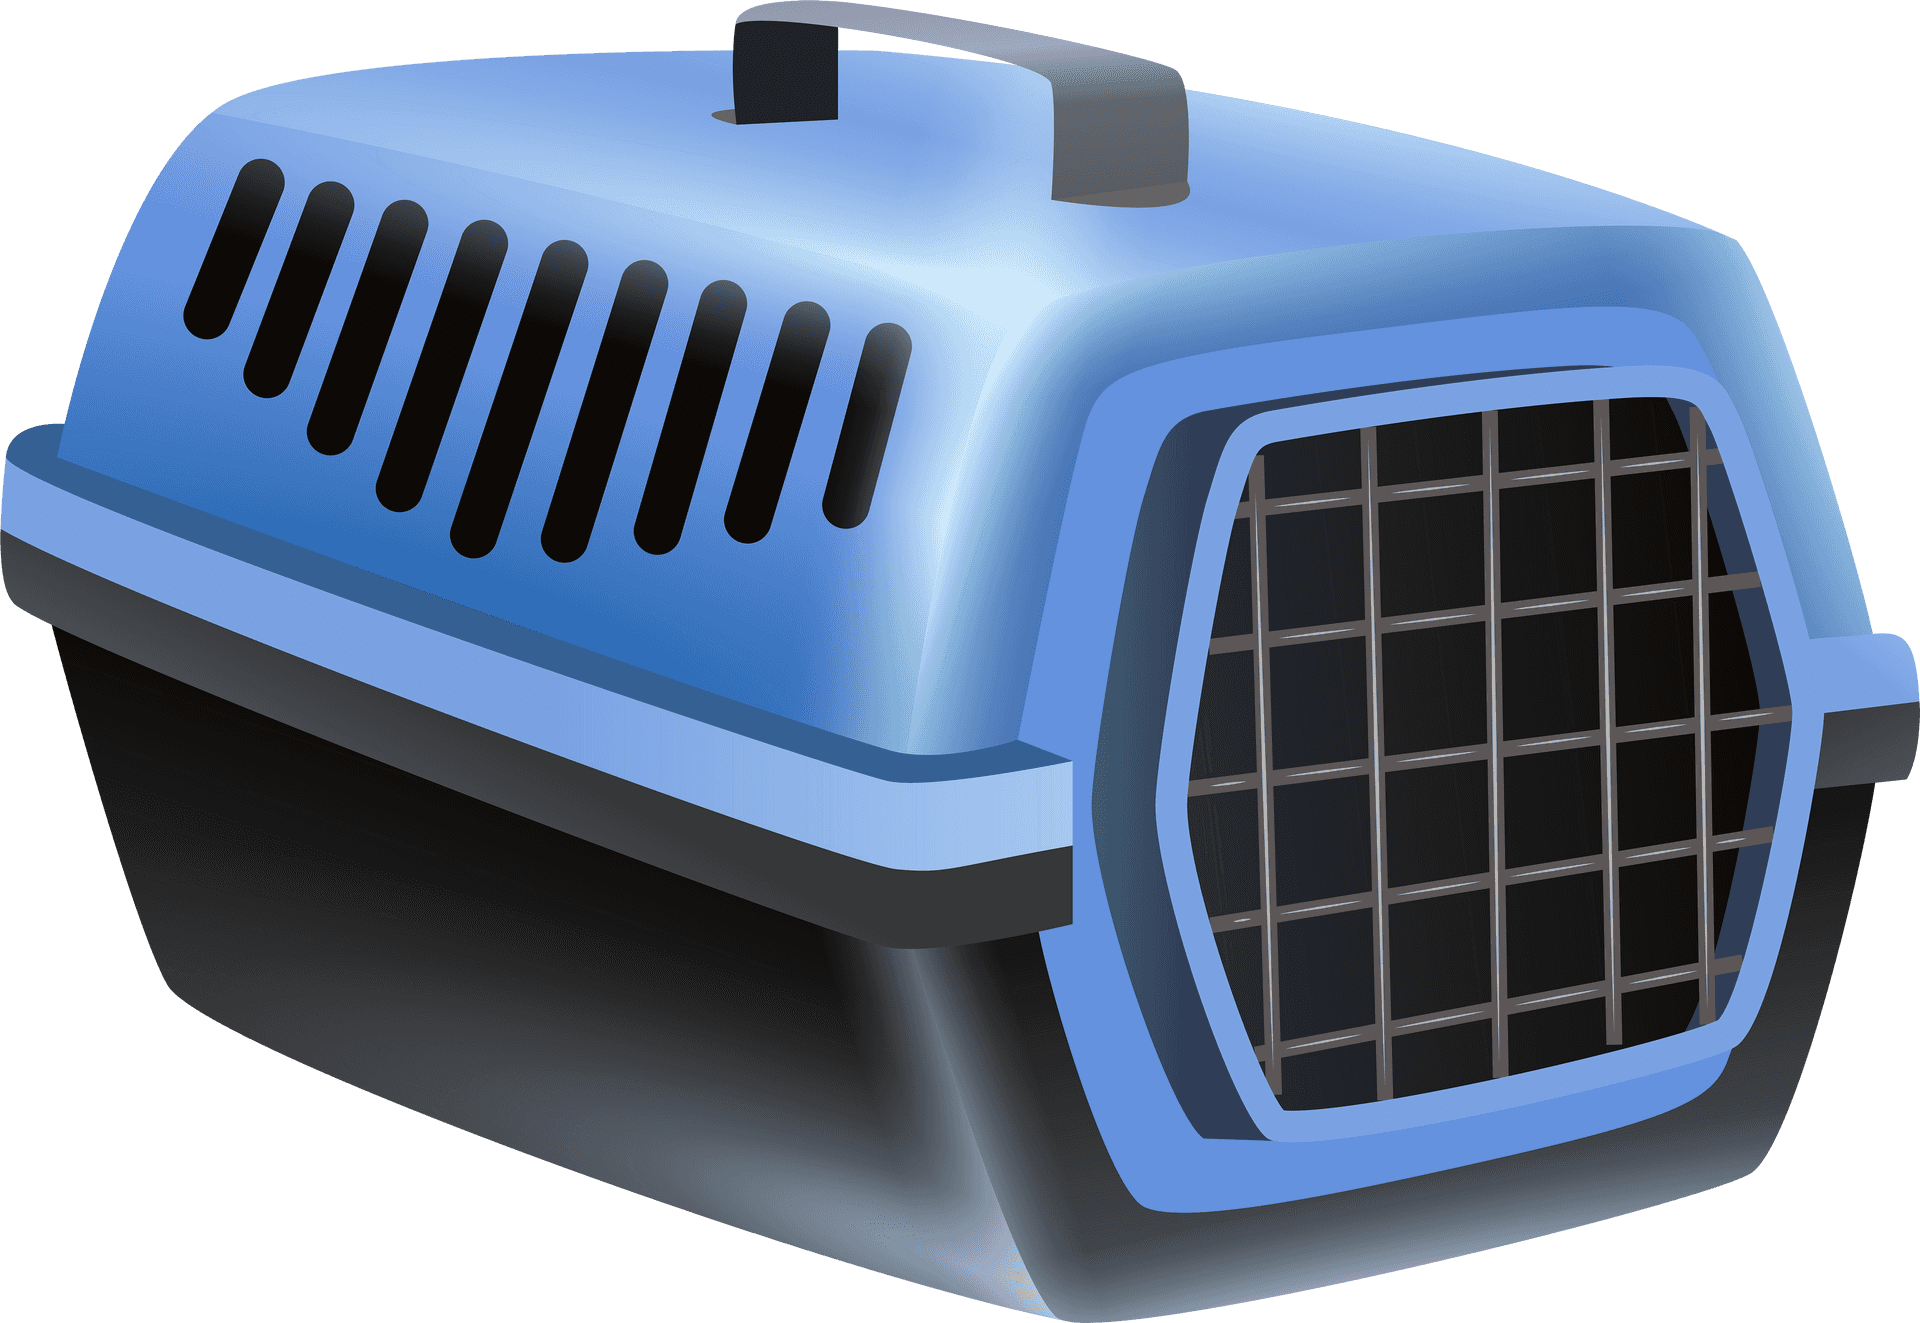 Blue Portable Pet Carrier PNG image